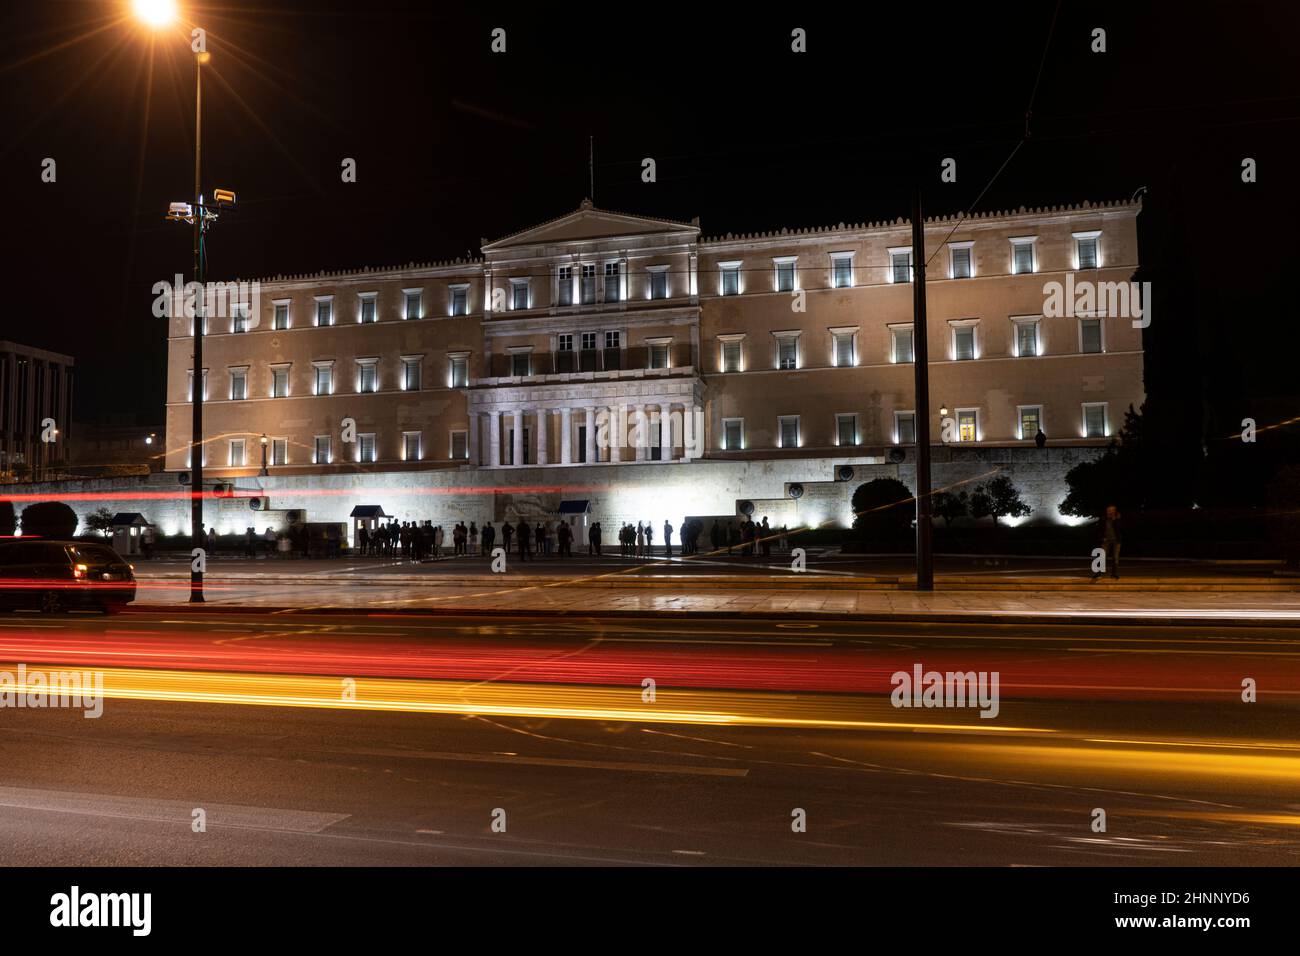 Greeke parlamentsgebäude in Athen, Griechenland Stockfoto